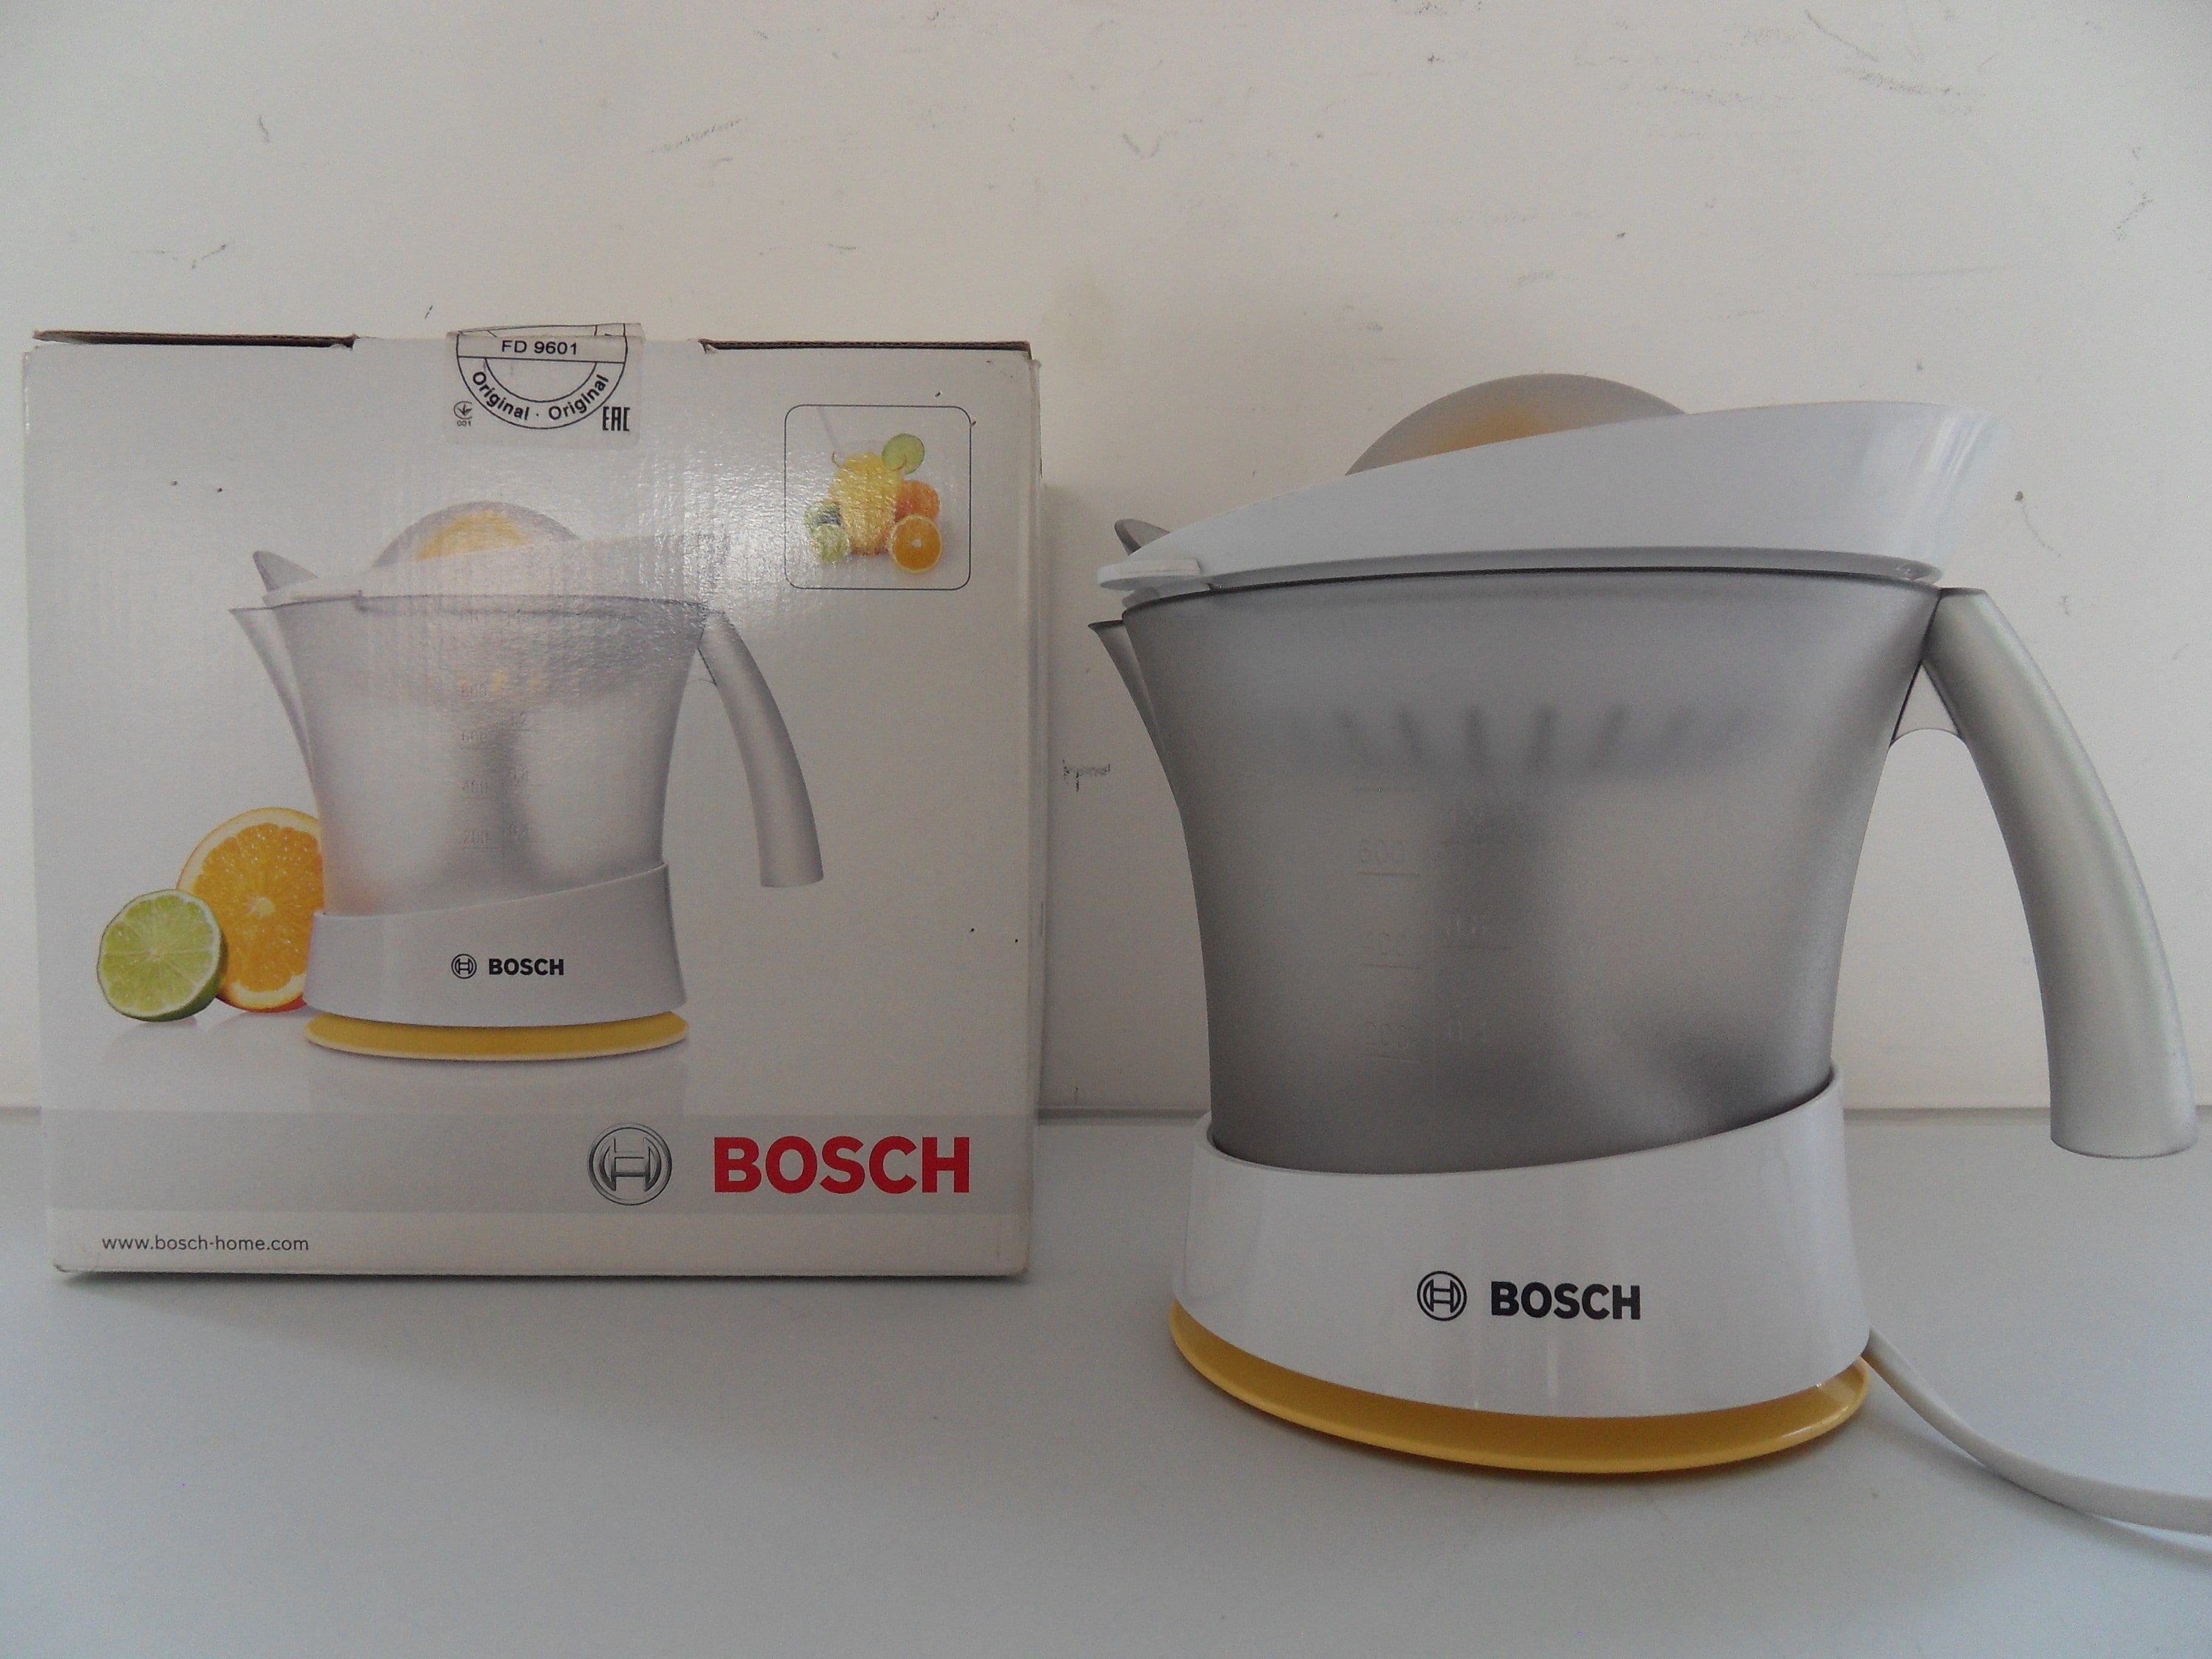 Bosch MCP3500